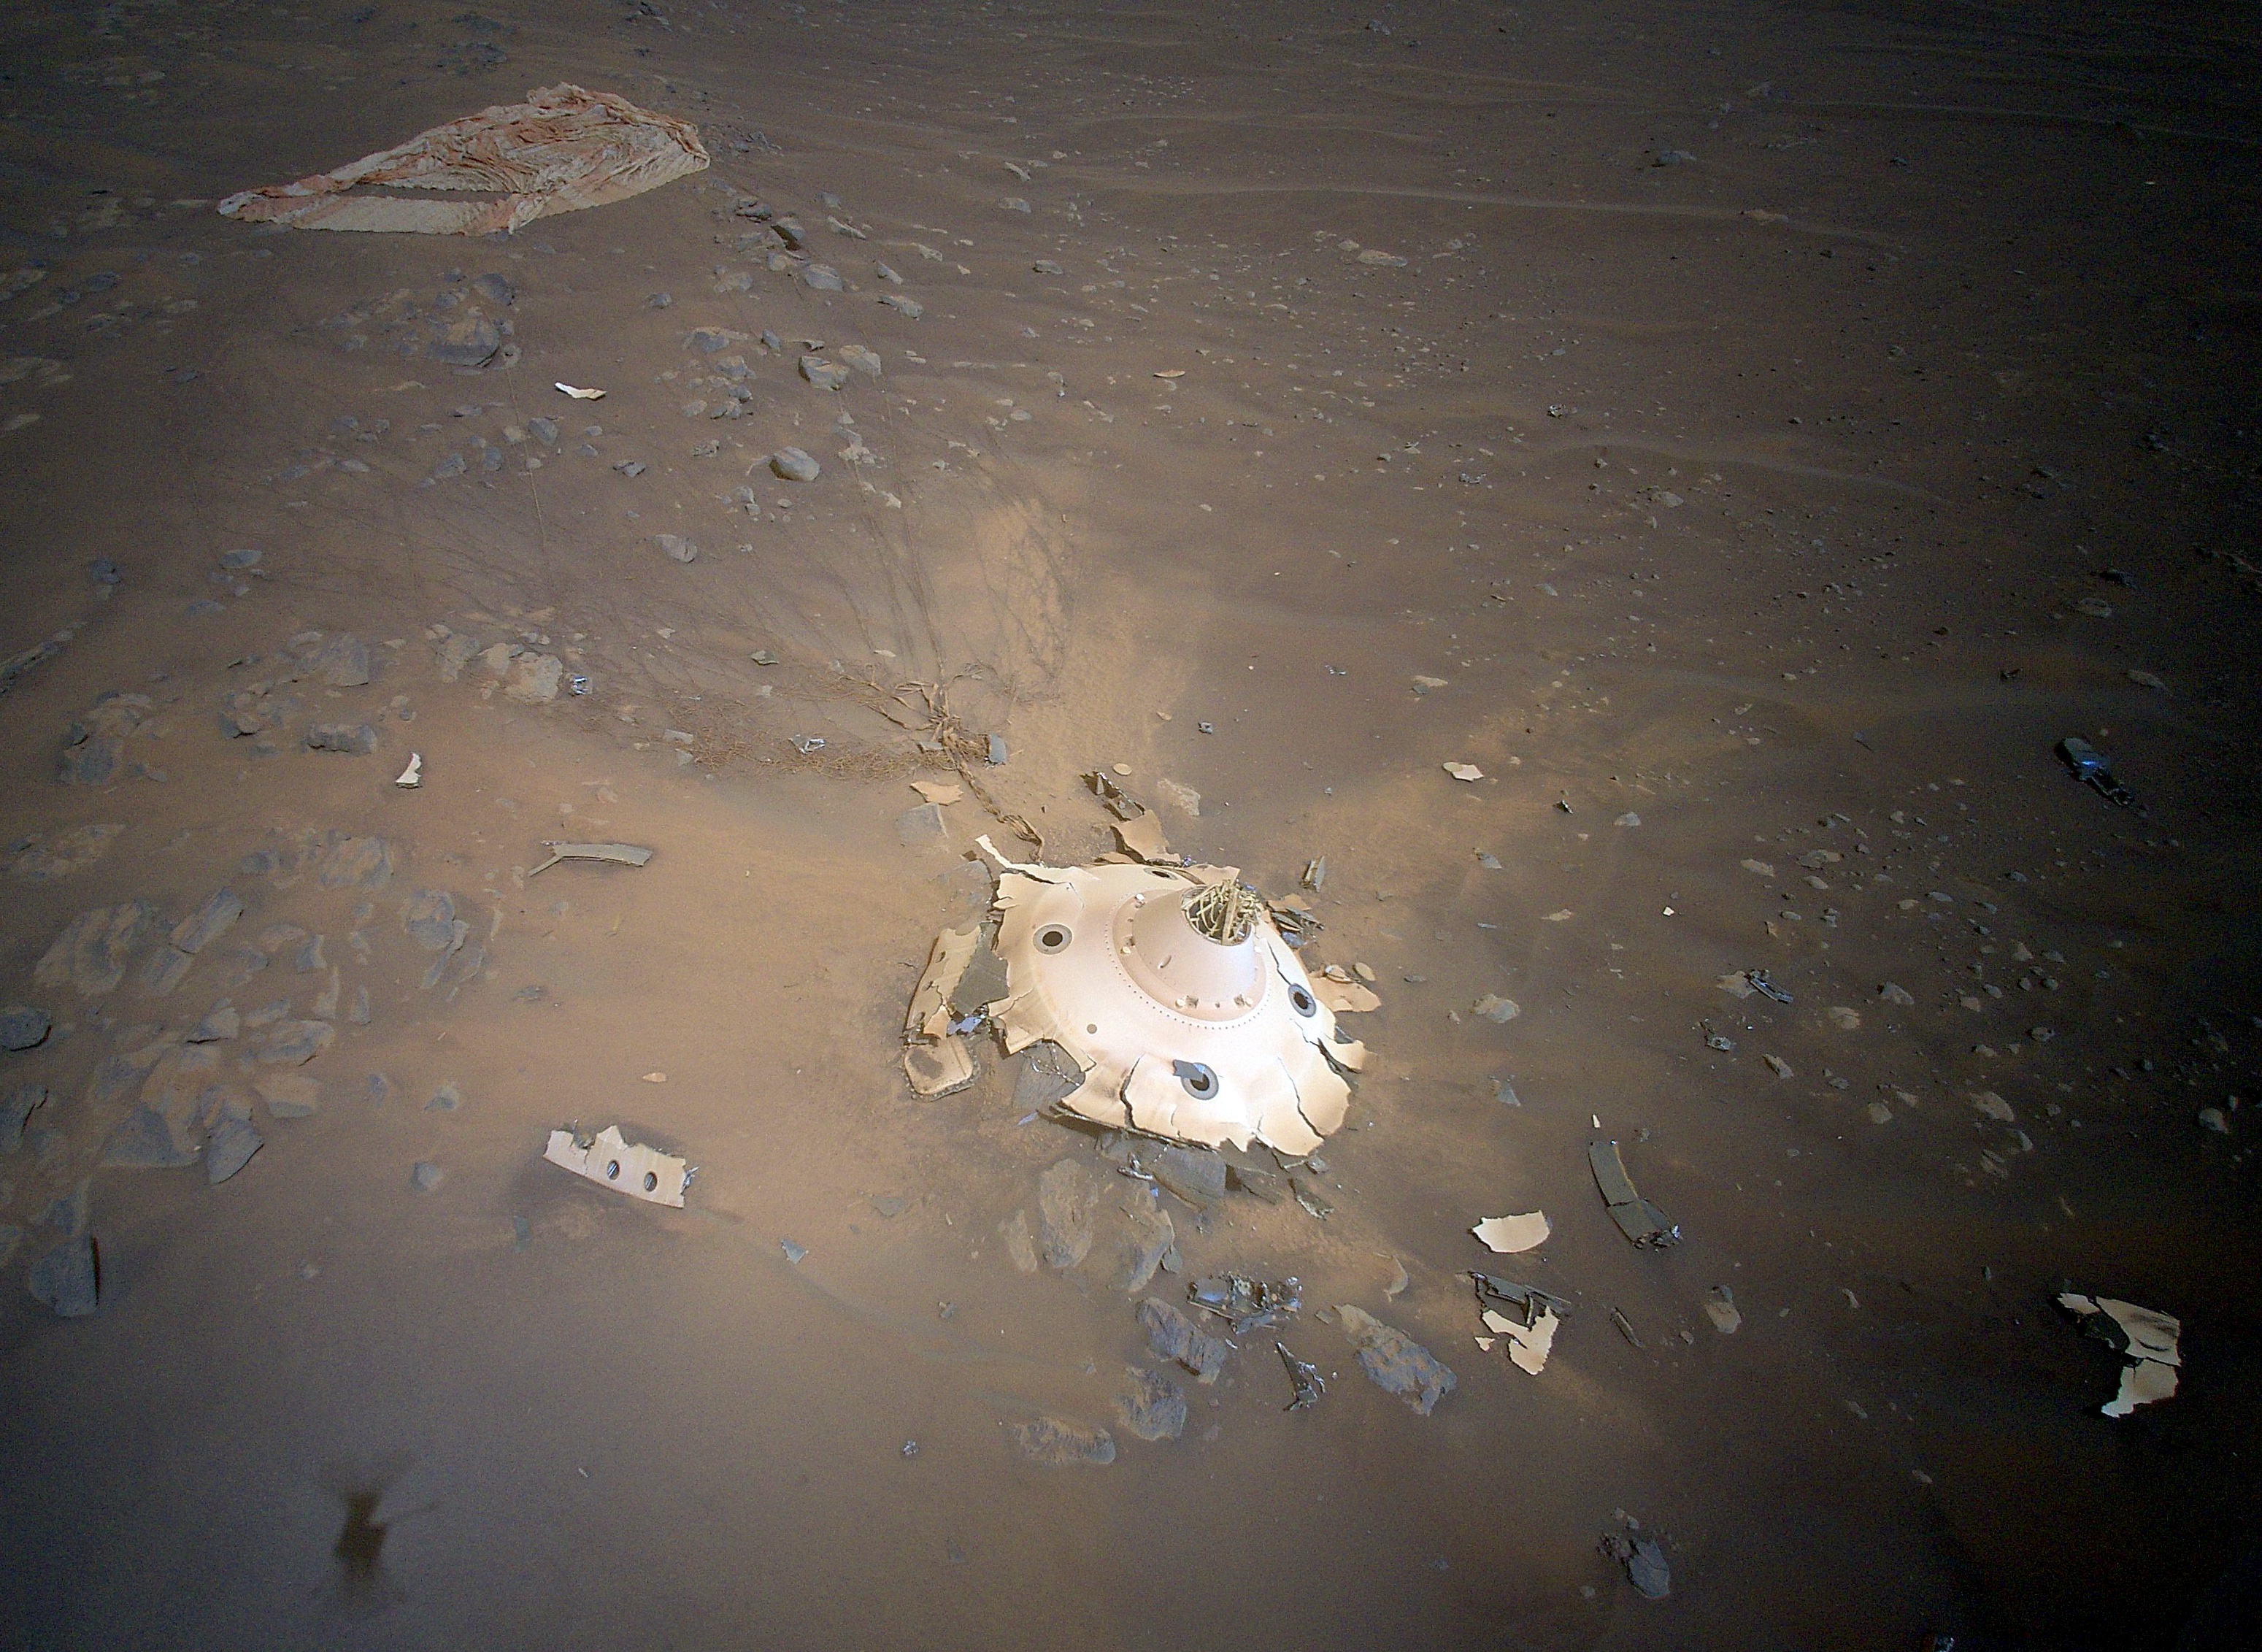 Ludzkość dotarła na Marsa - na Czerwonej Planecie zgromadzono ponad 7100 kg śmieci pochodzenia ziemskiego